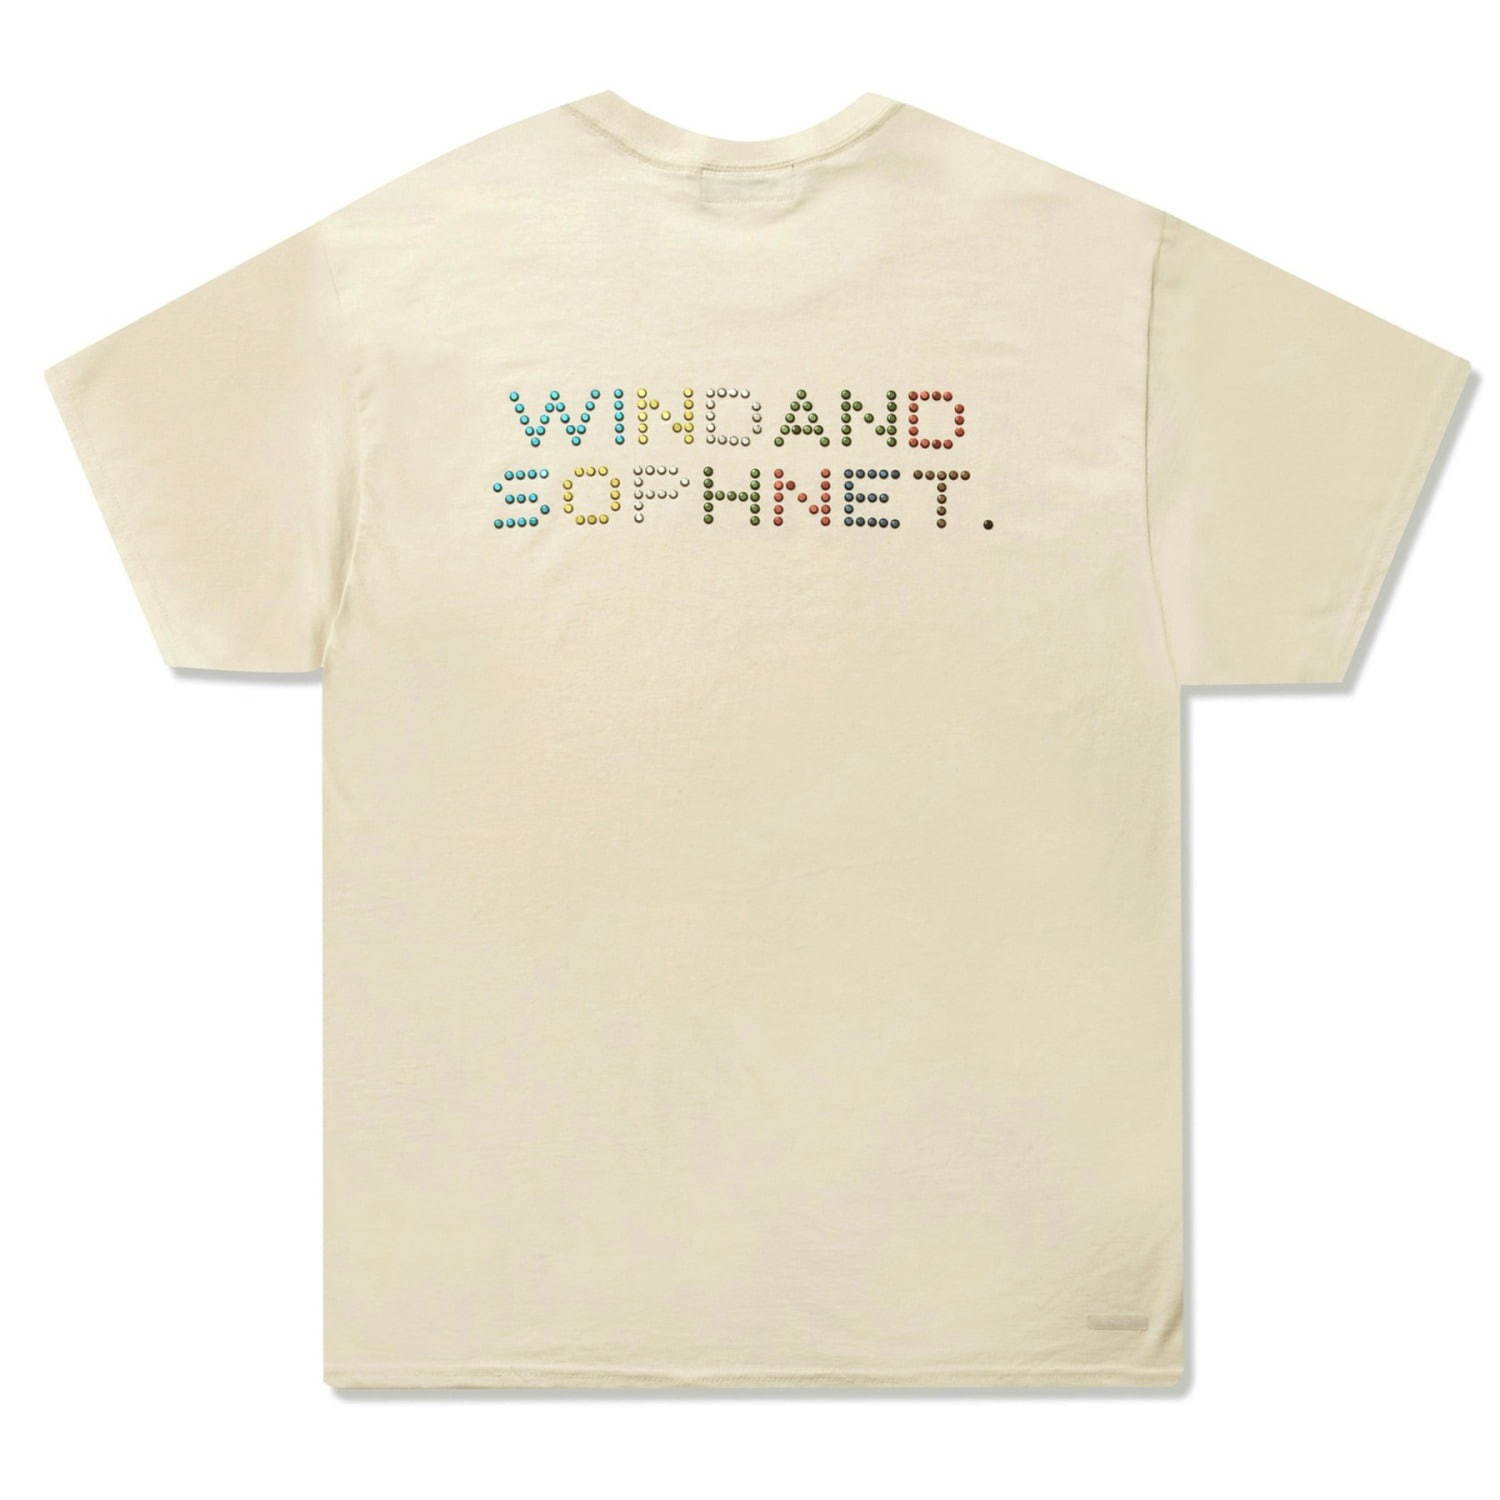 ソフネット×ウィンダンシー“ラインストーンロゴ”を配したTシャツ